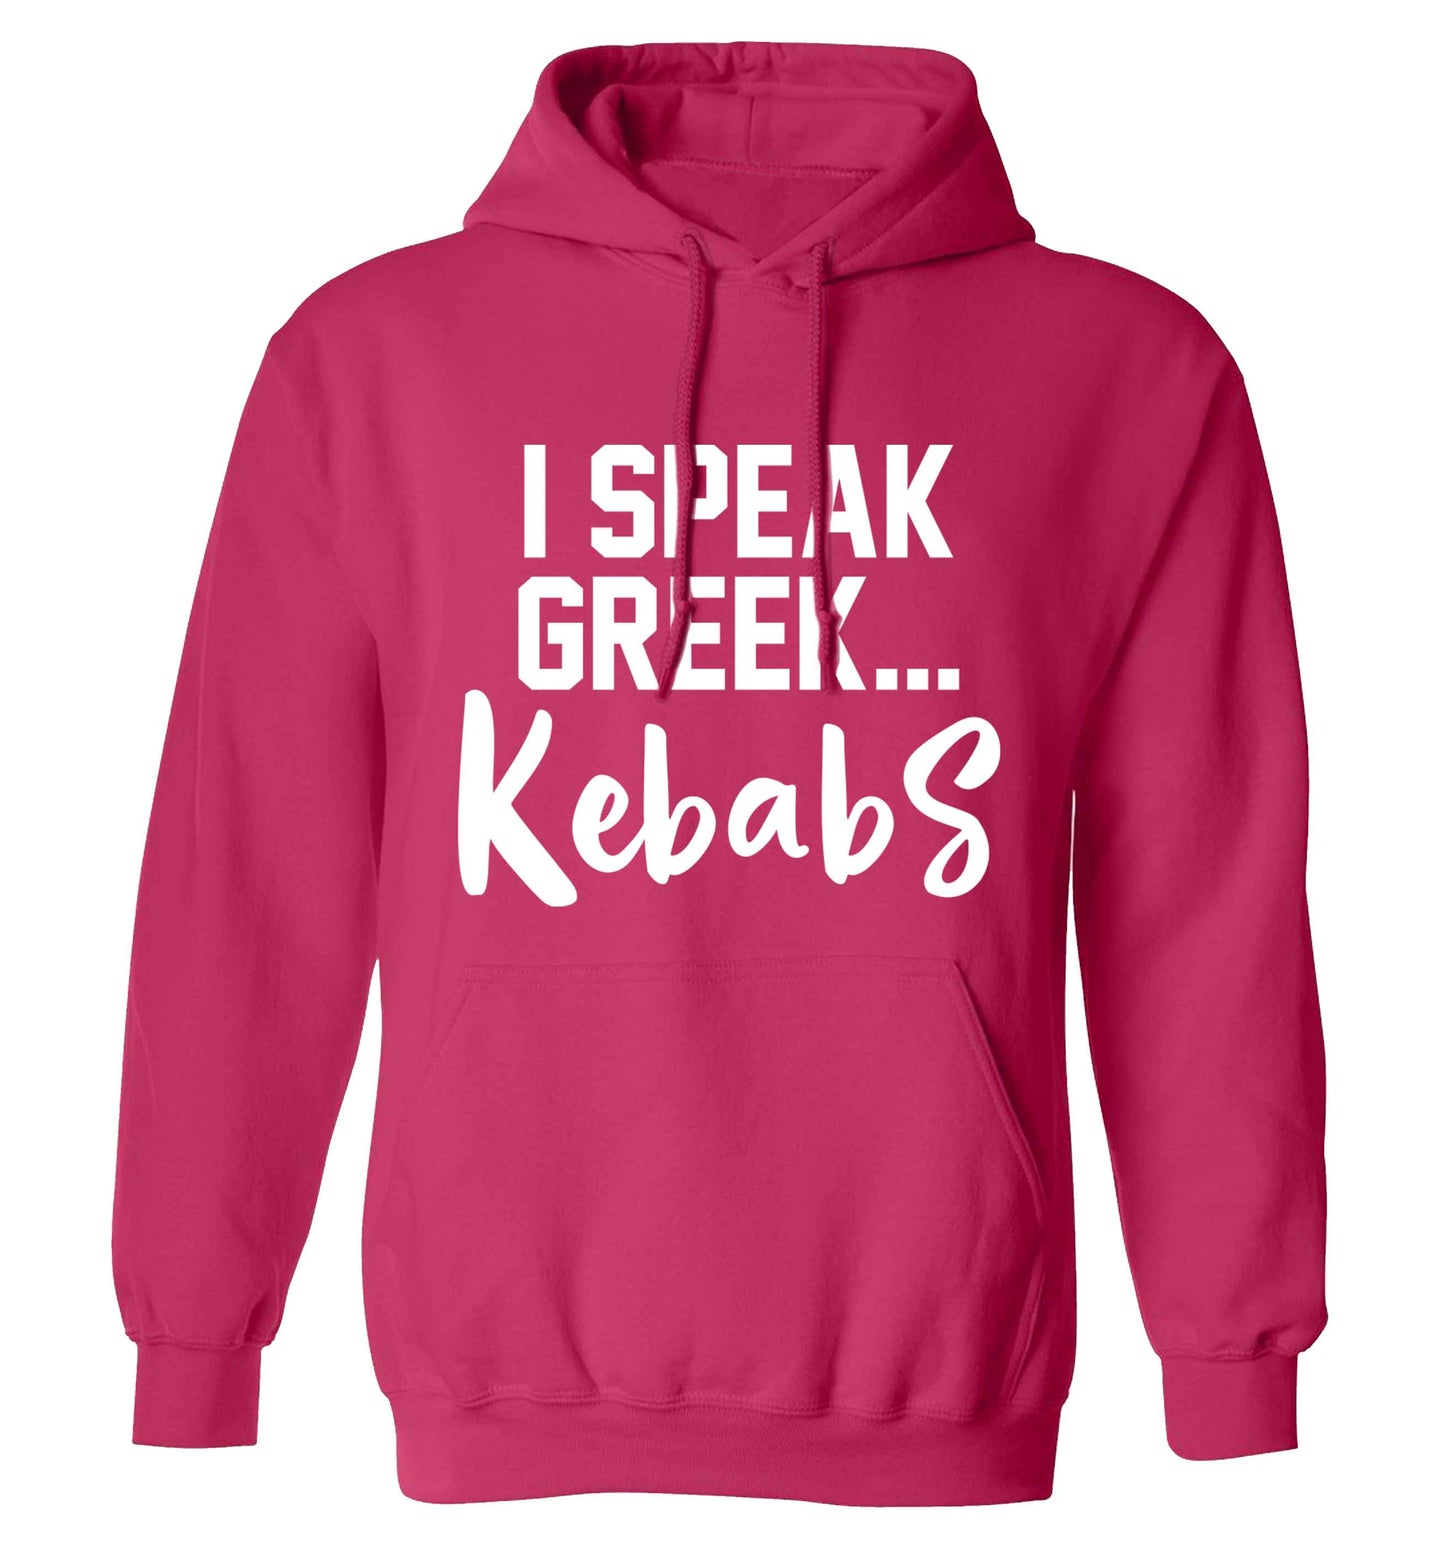 I speak Greek...kebabs adults unisex pink hoodie 2XL